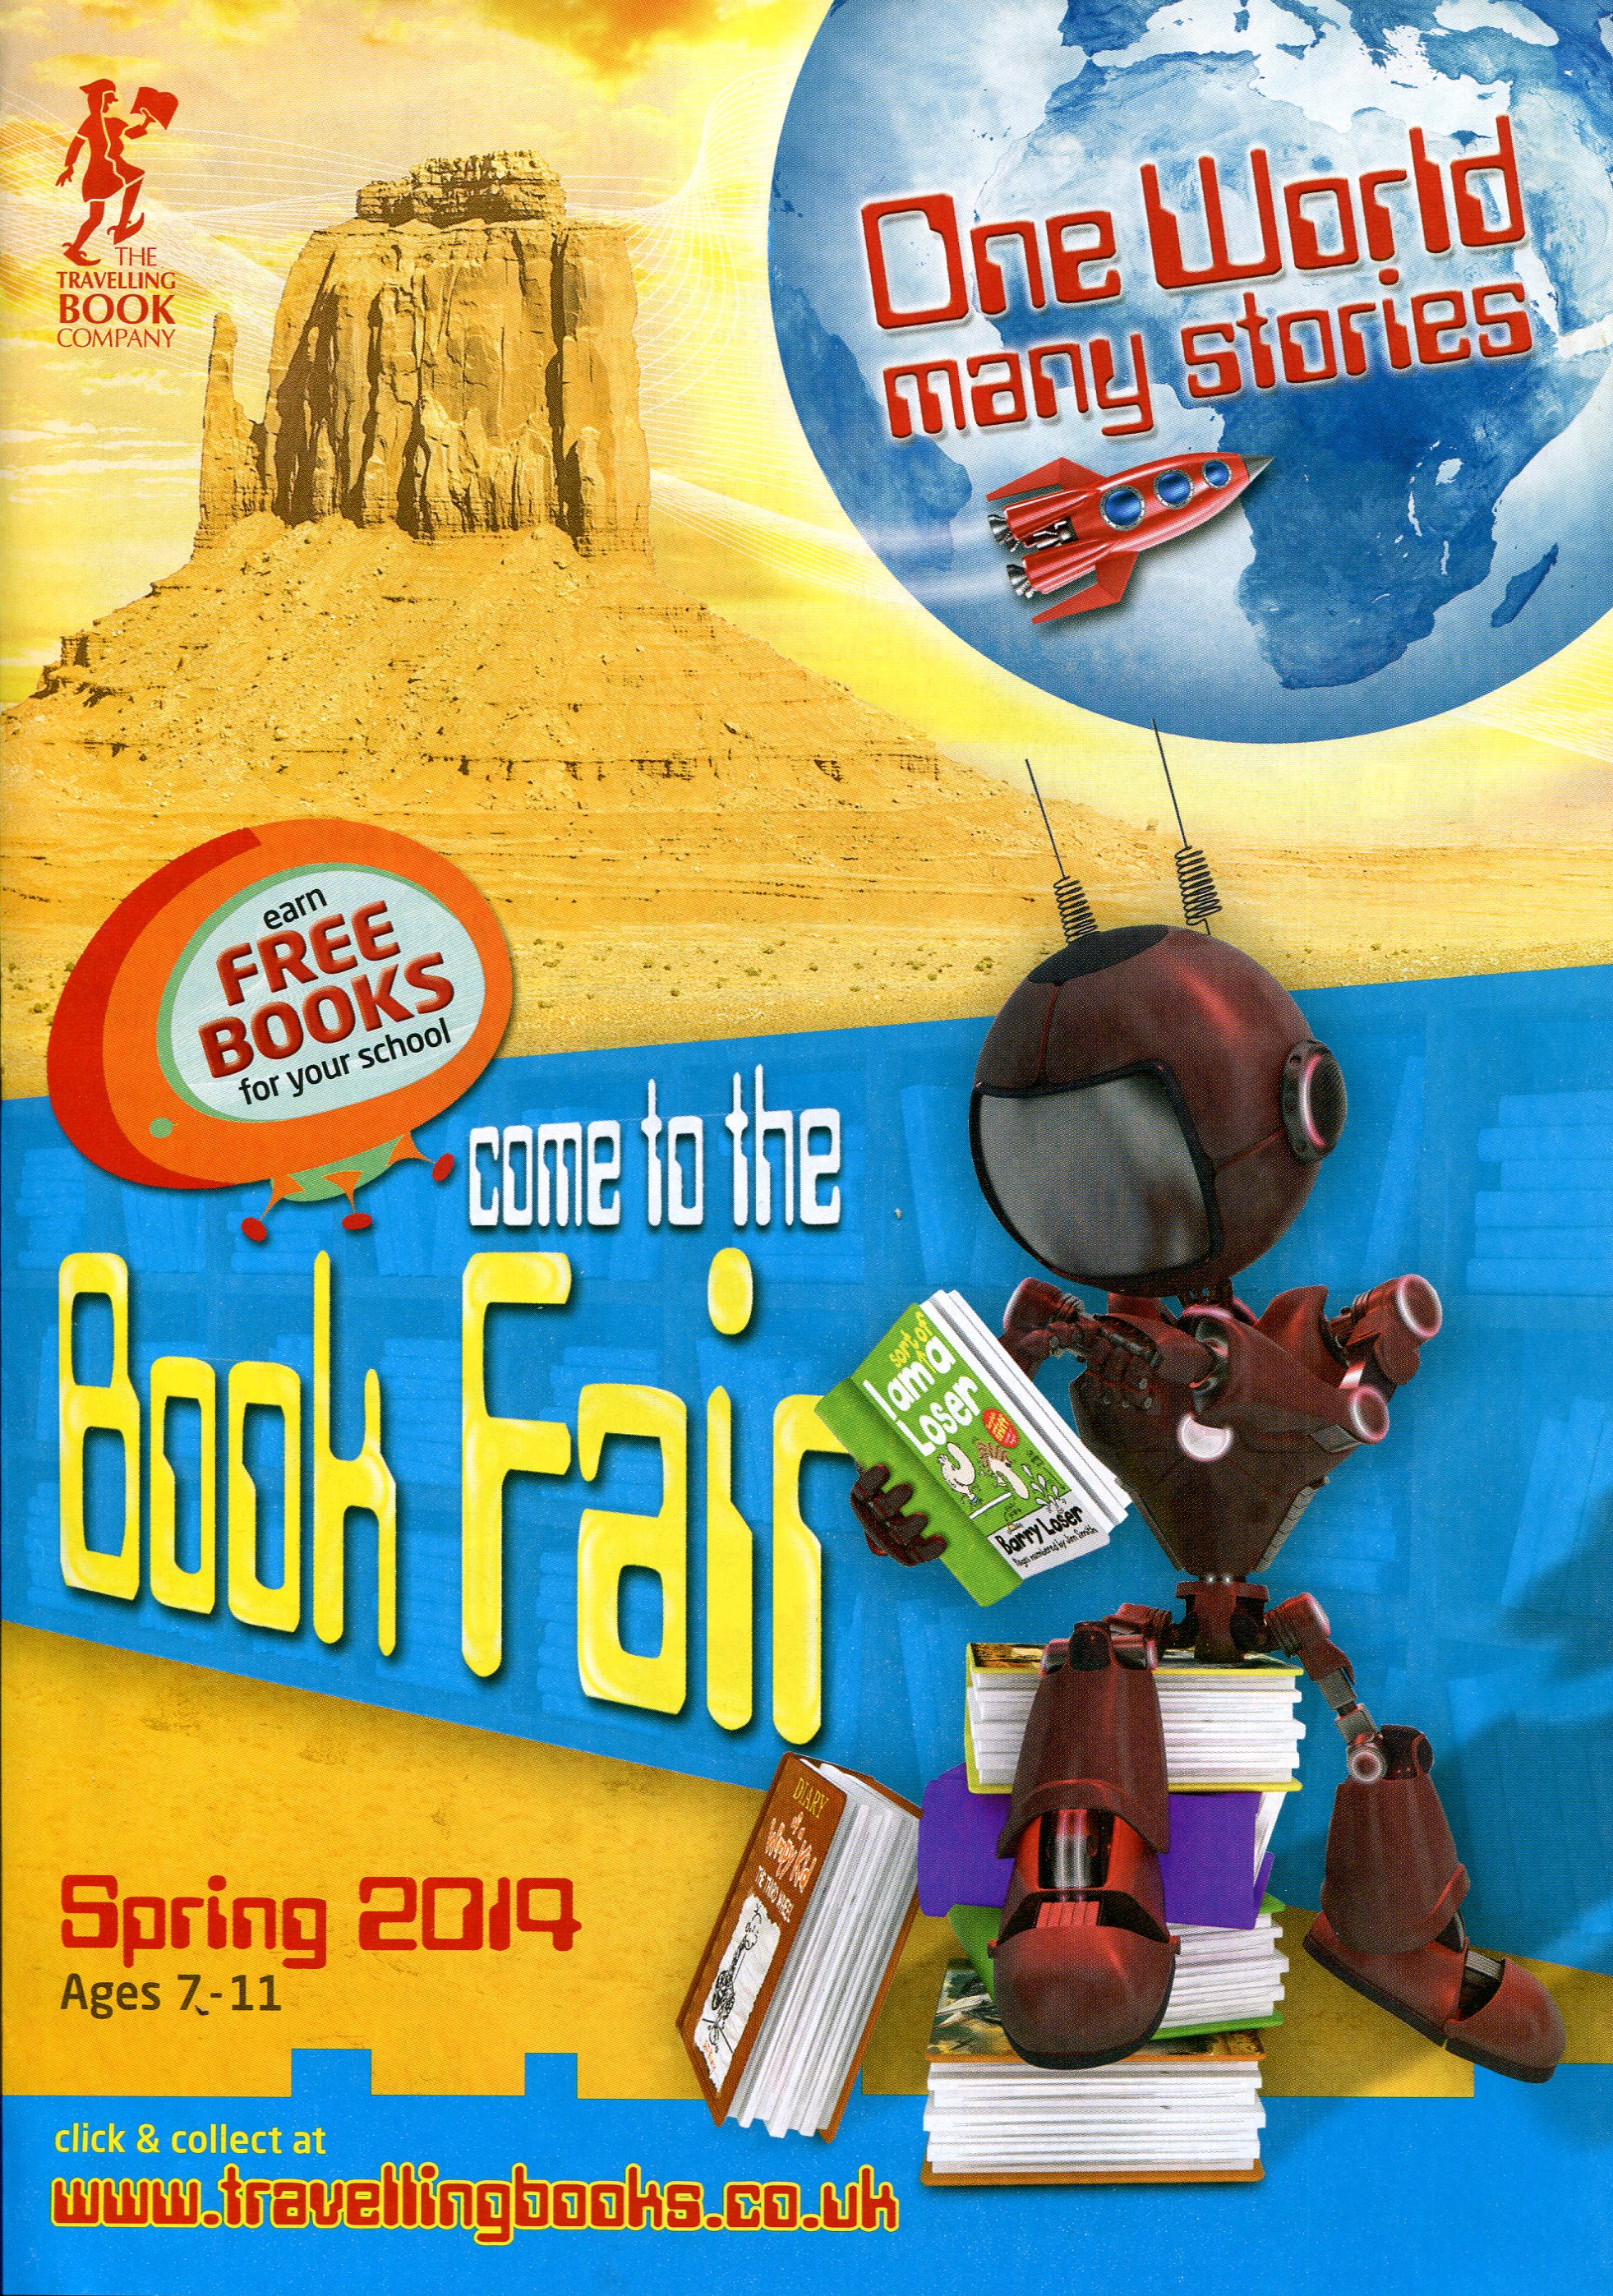 travelling book fair logo